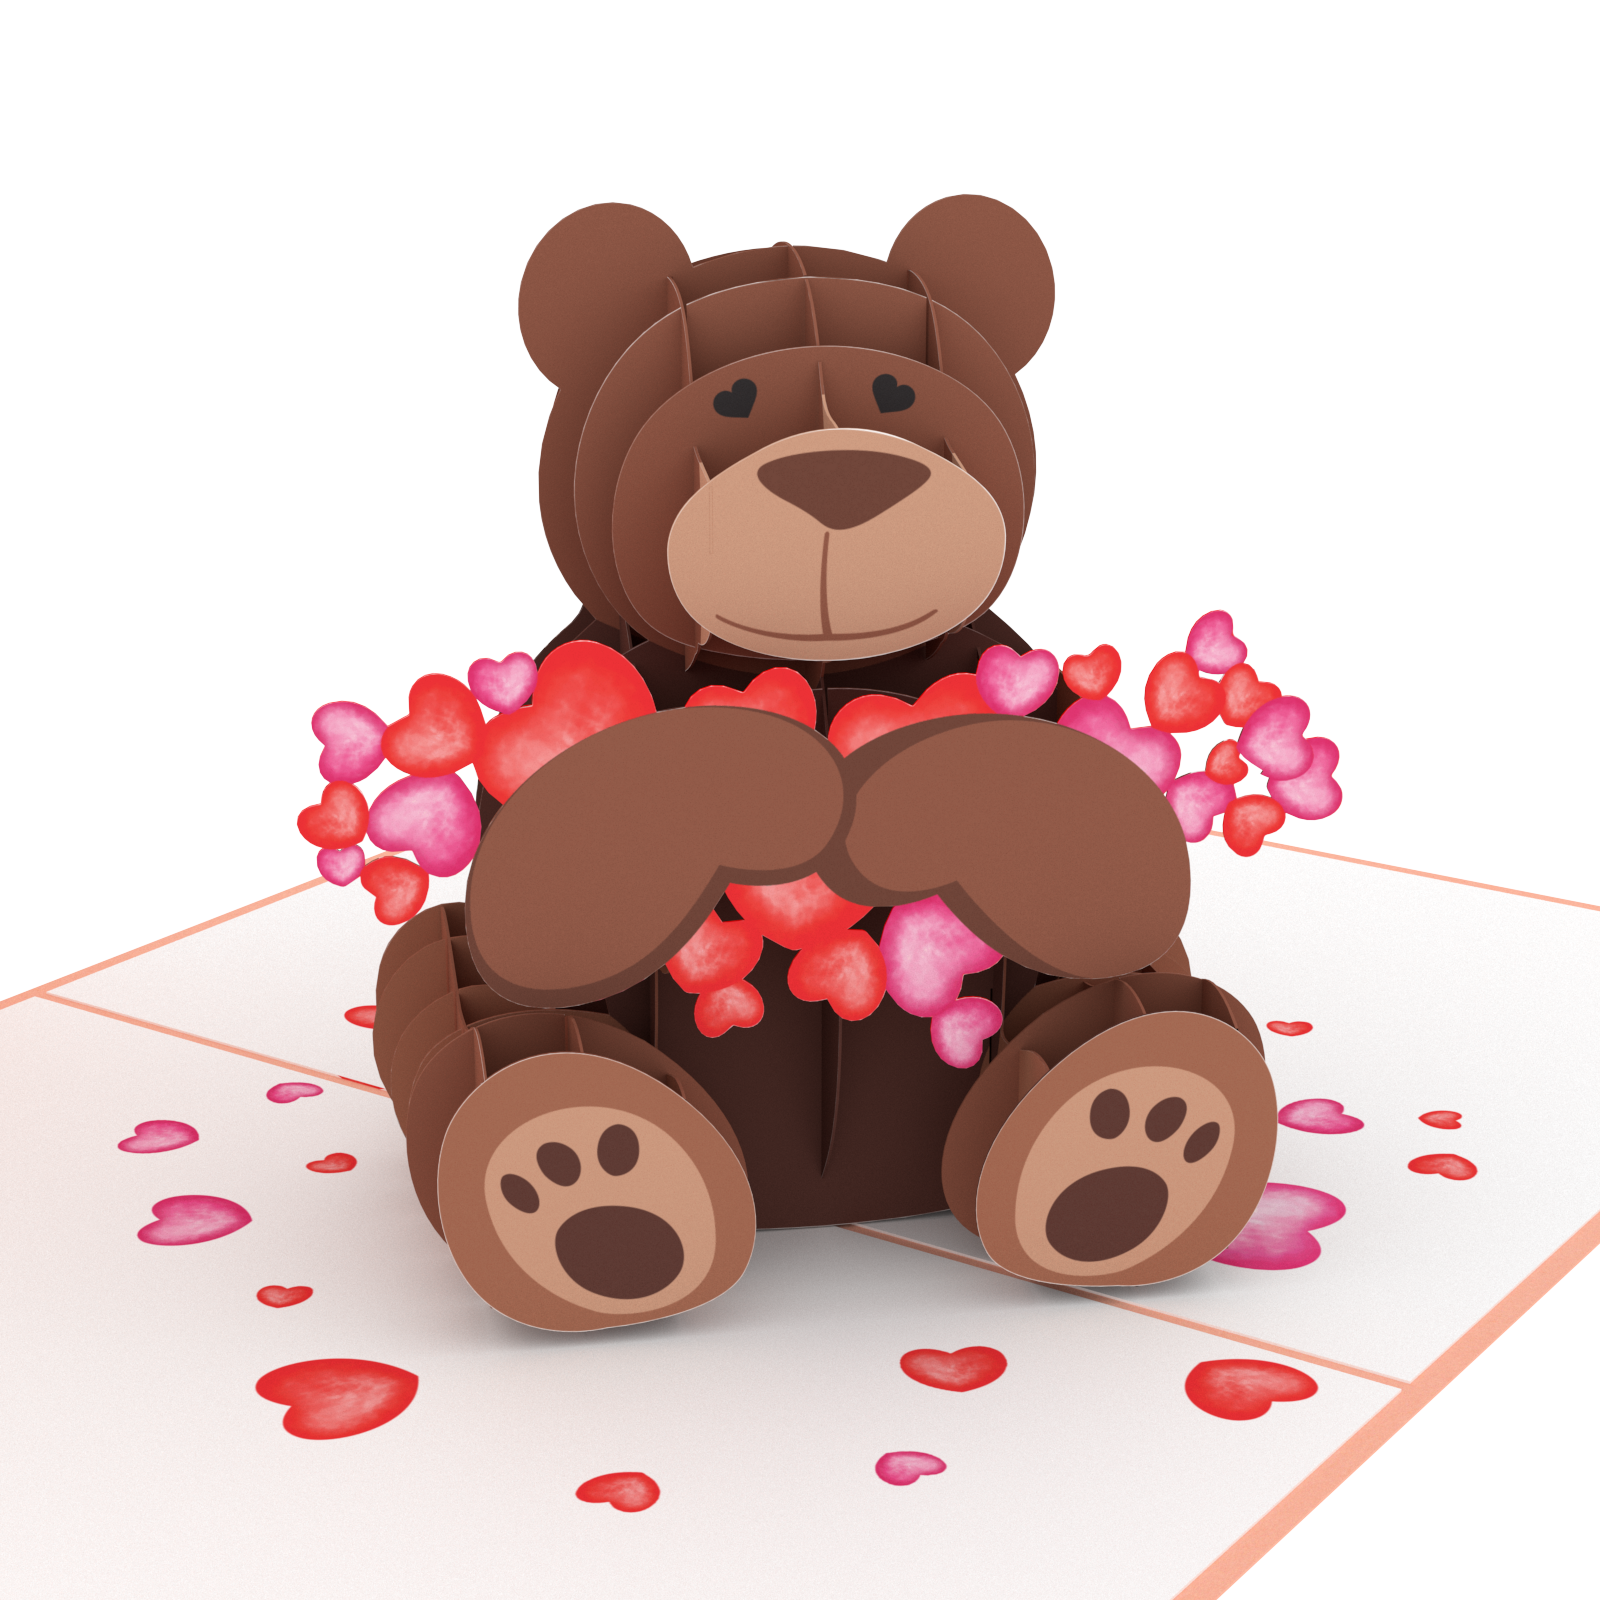 3D Pop Up Teddy Bear Card